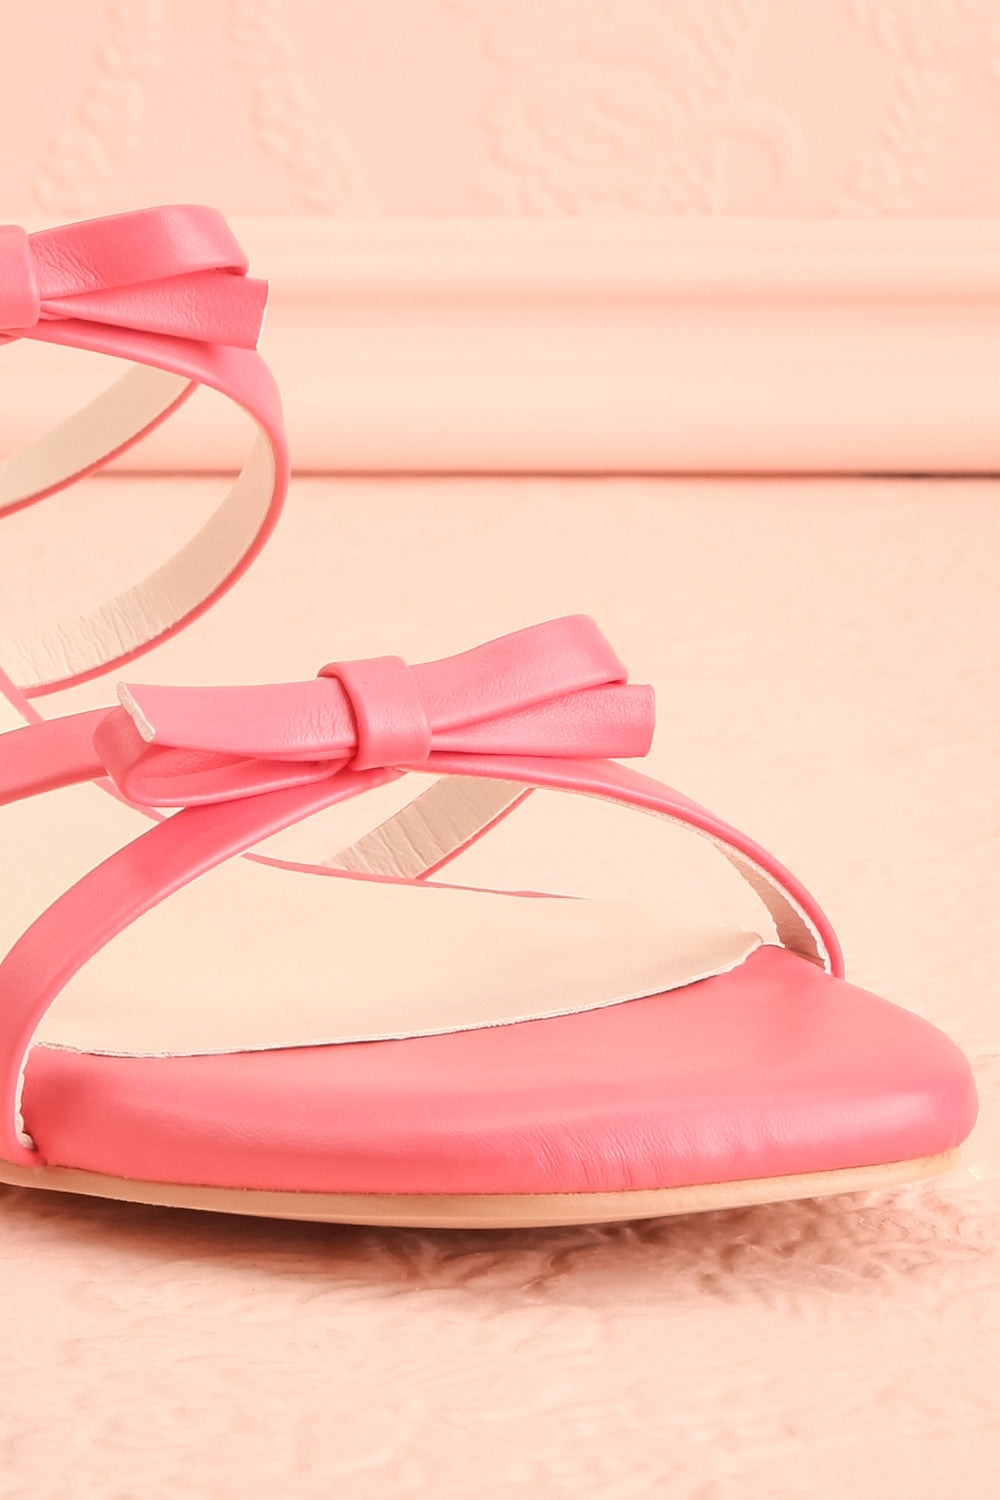 Macy Pink Heeled Sandals w/ Bows | Maison garçonne front close-up